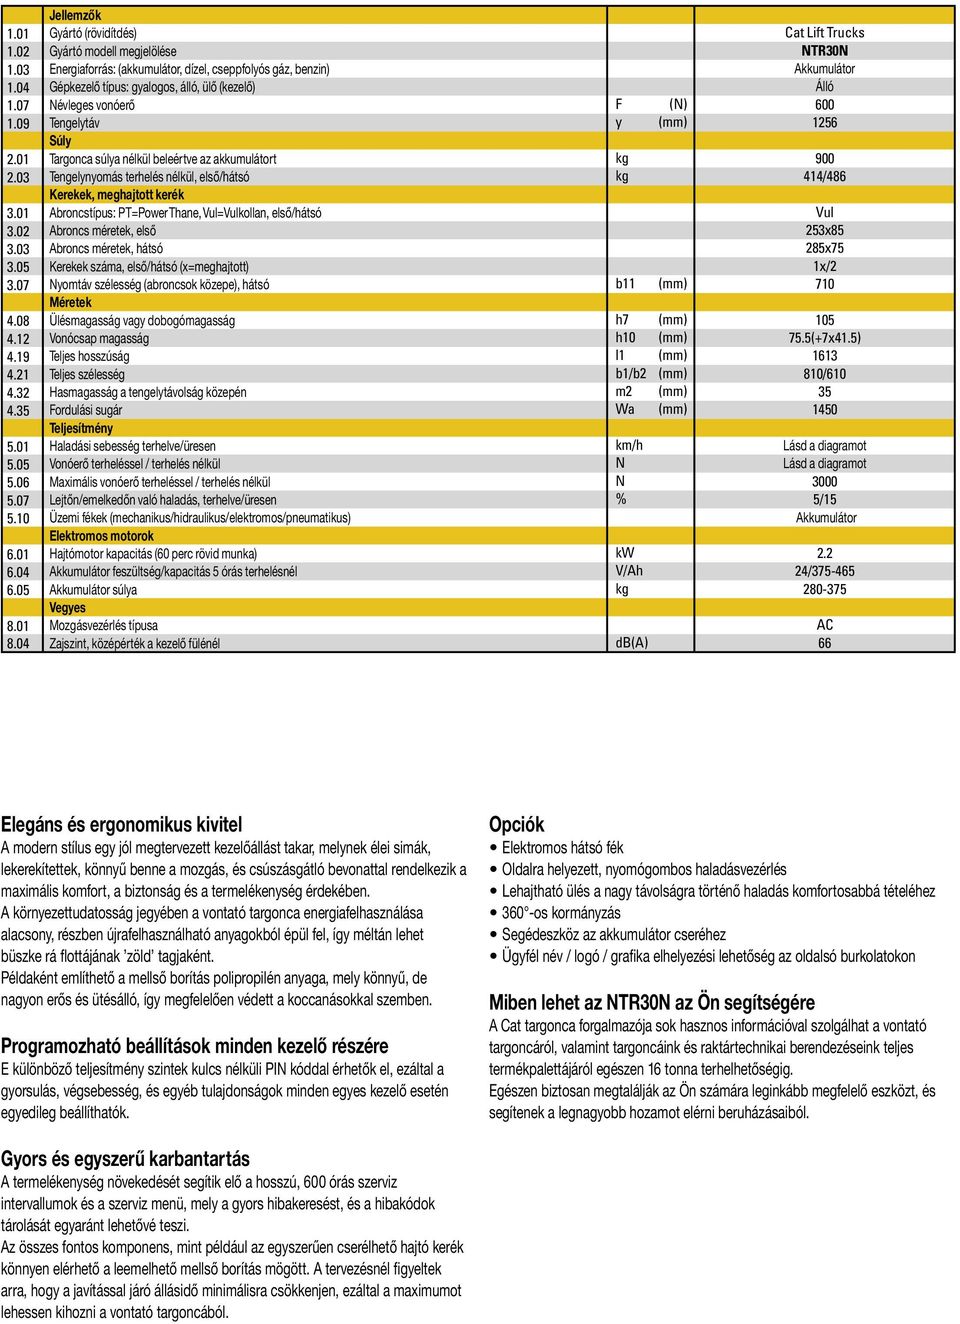 NTR30N. Műszaki adatok. Vontató targonca 3.0 tonna - PDF Ingyenes letöltés